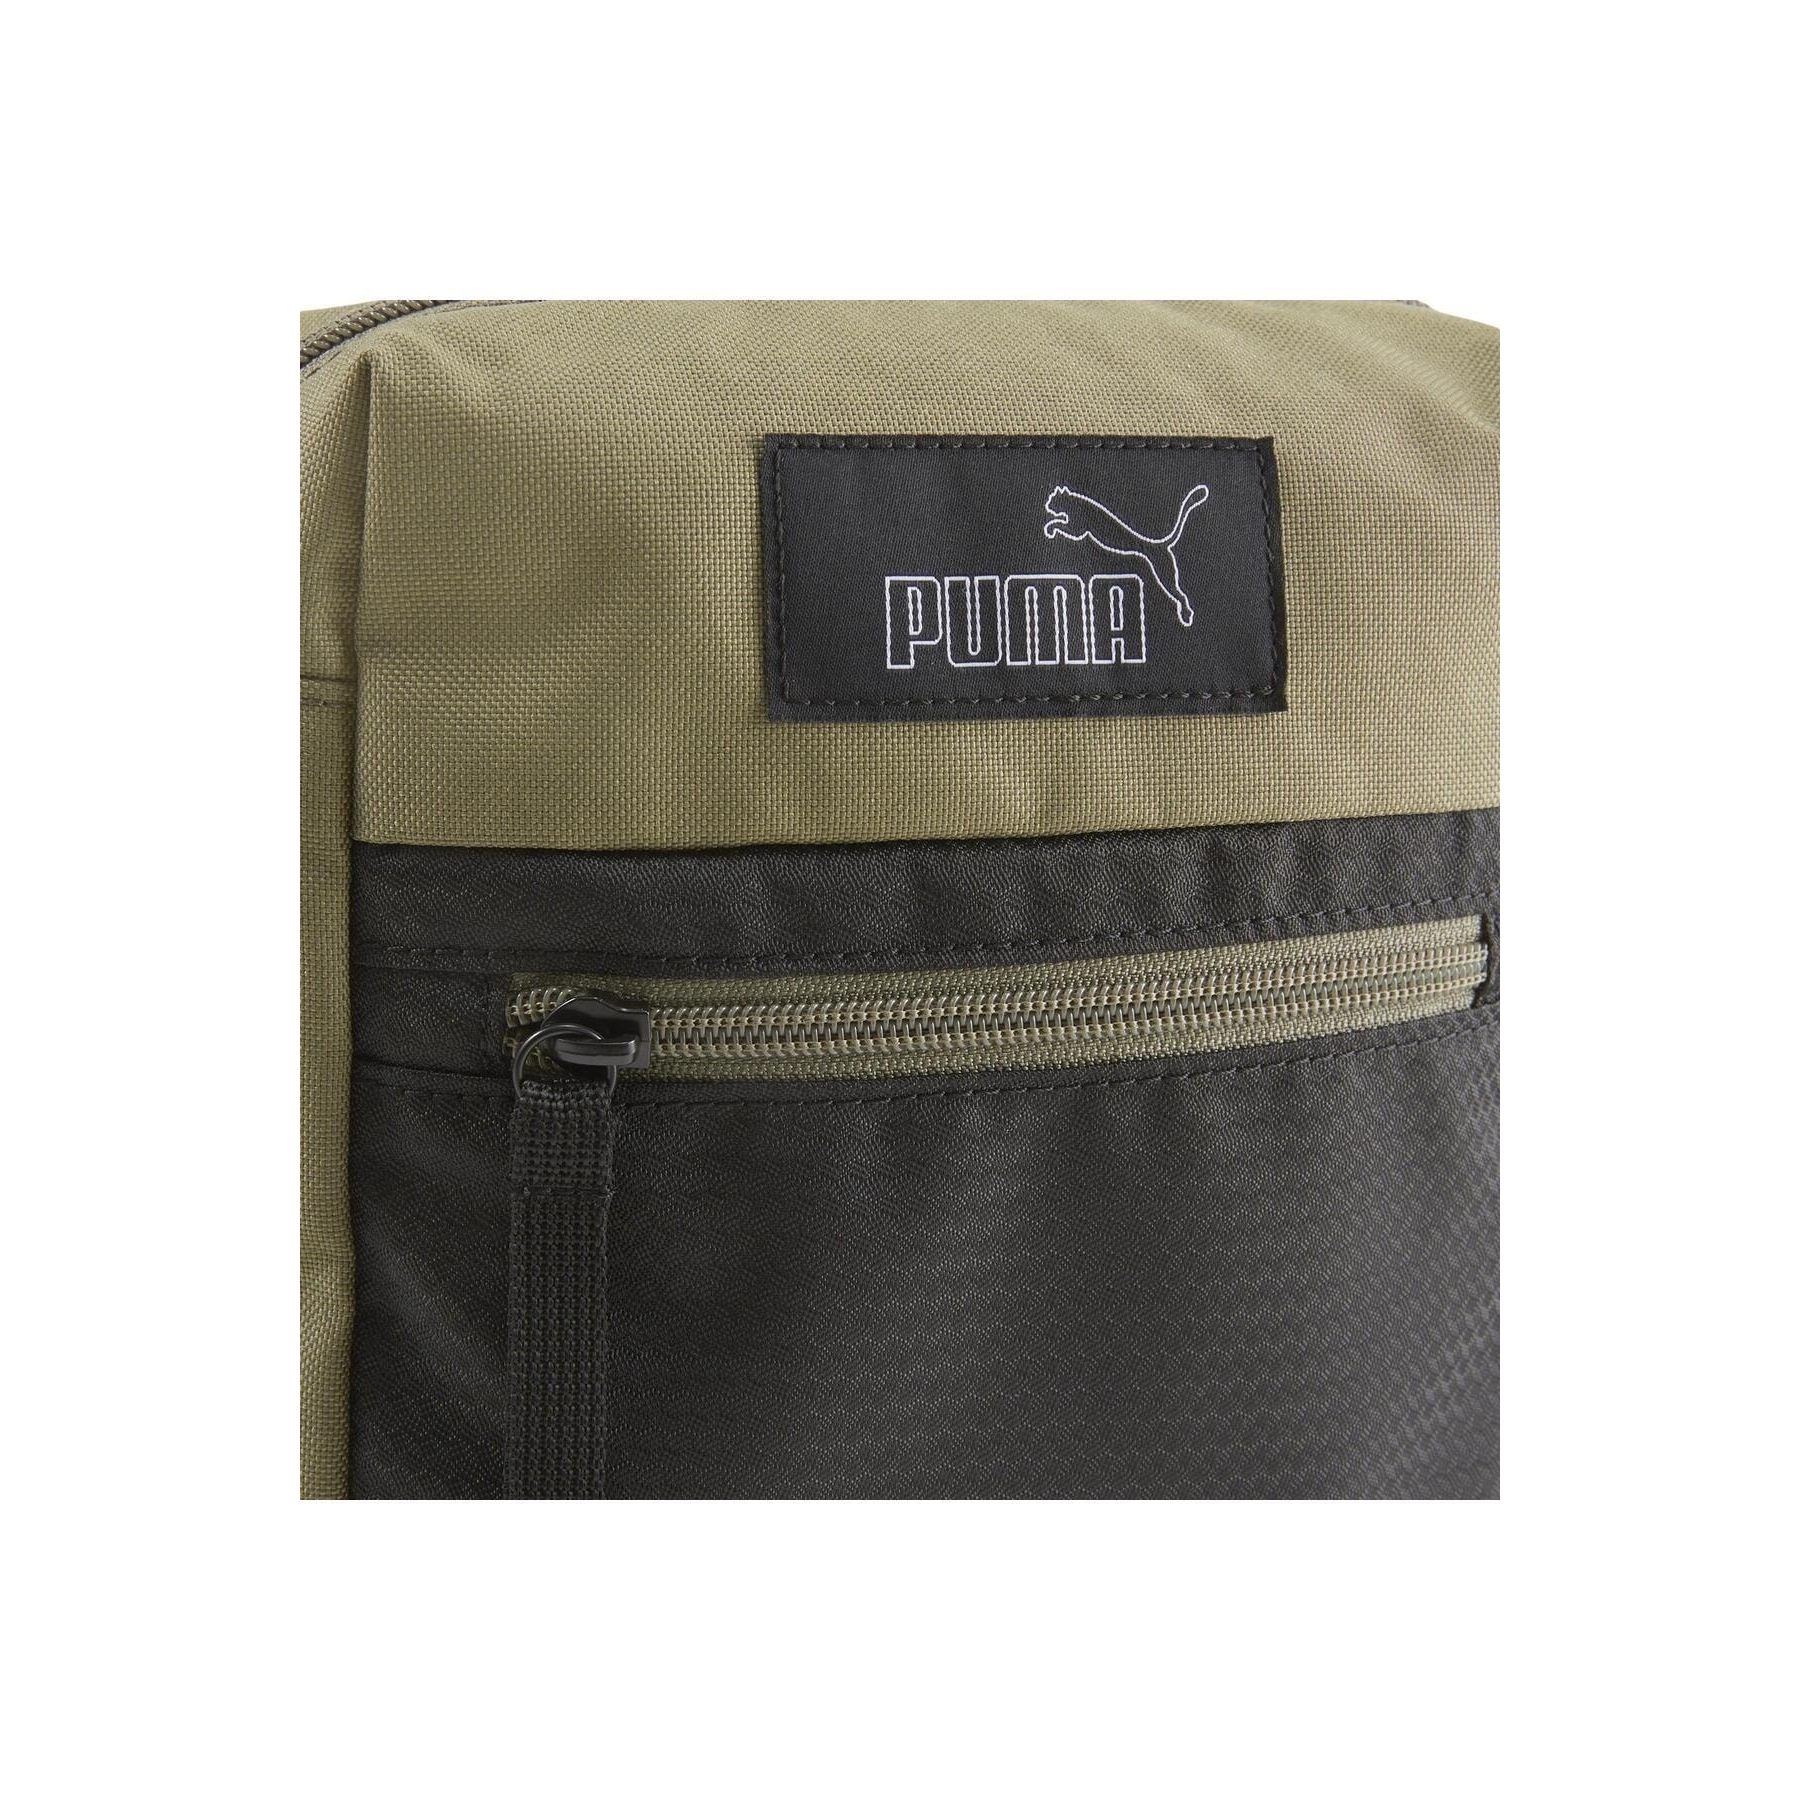 Puma Evoess Portable Unisex Yeşil Omuz Çantası (079575-03)